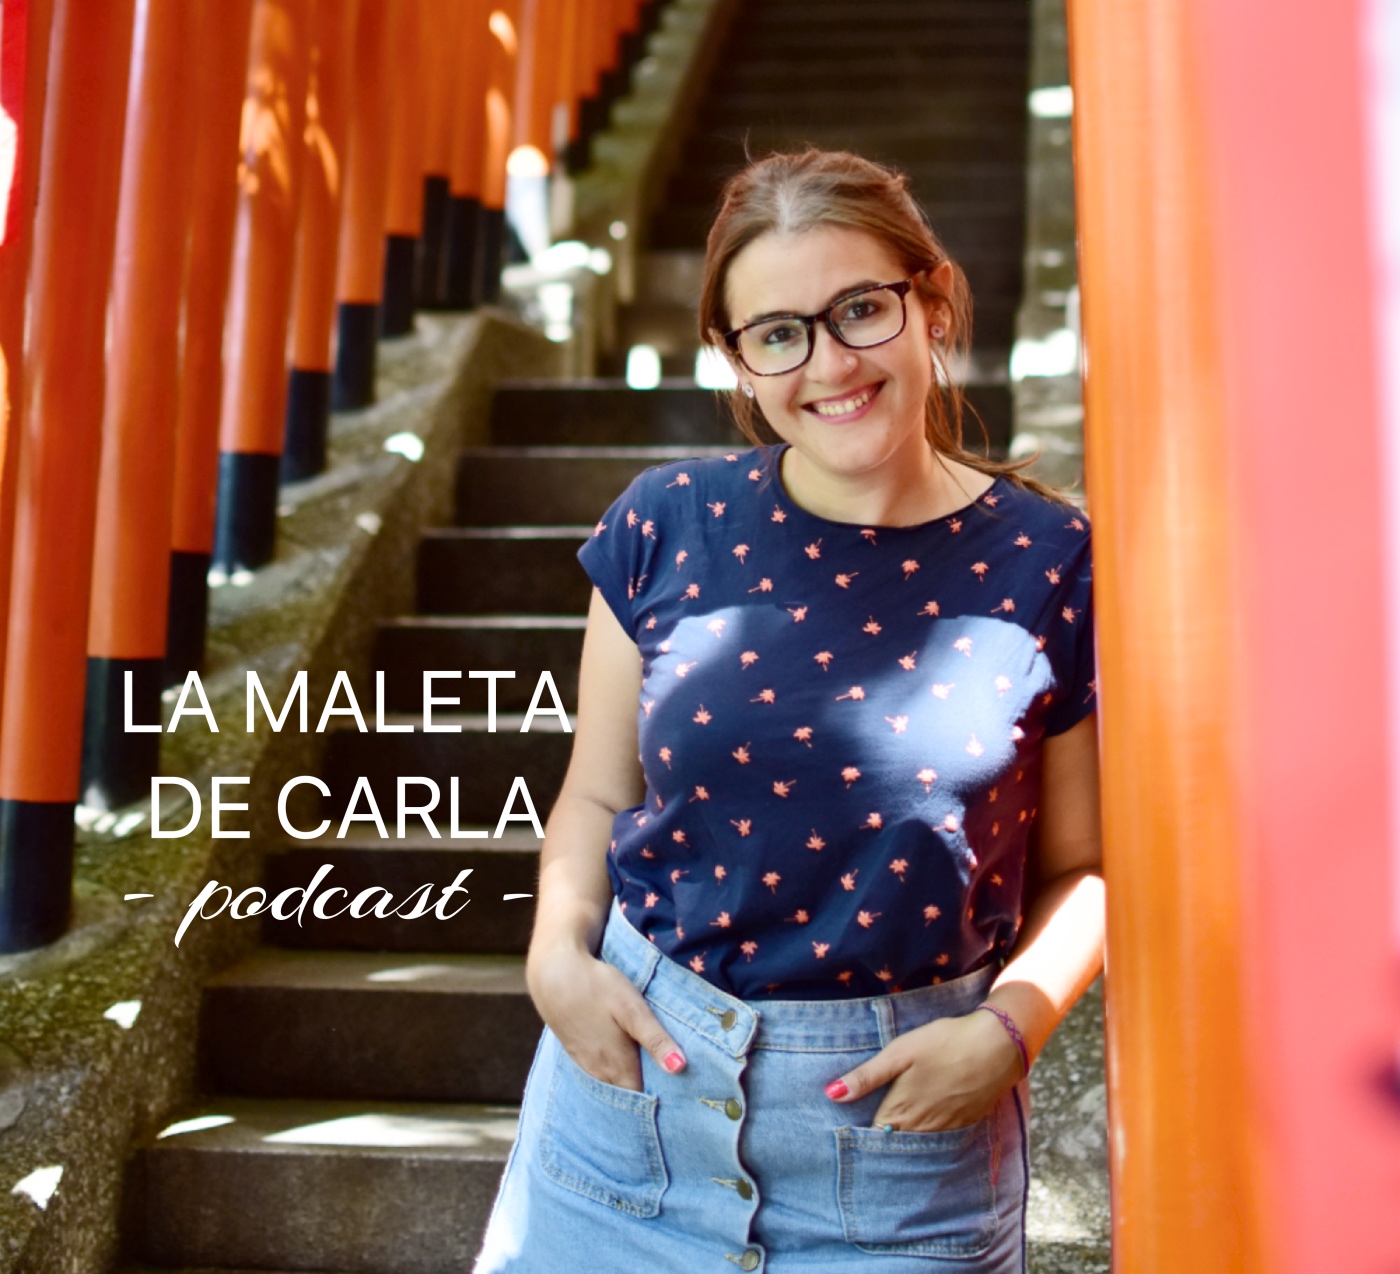 repentino Visión Sollozos El Podcast de La Maleta de Carla: ¡bienvenida! - La Maleta de Carla